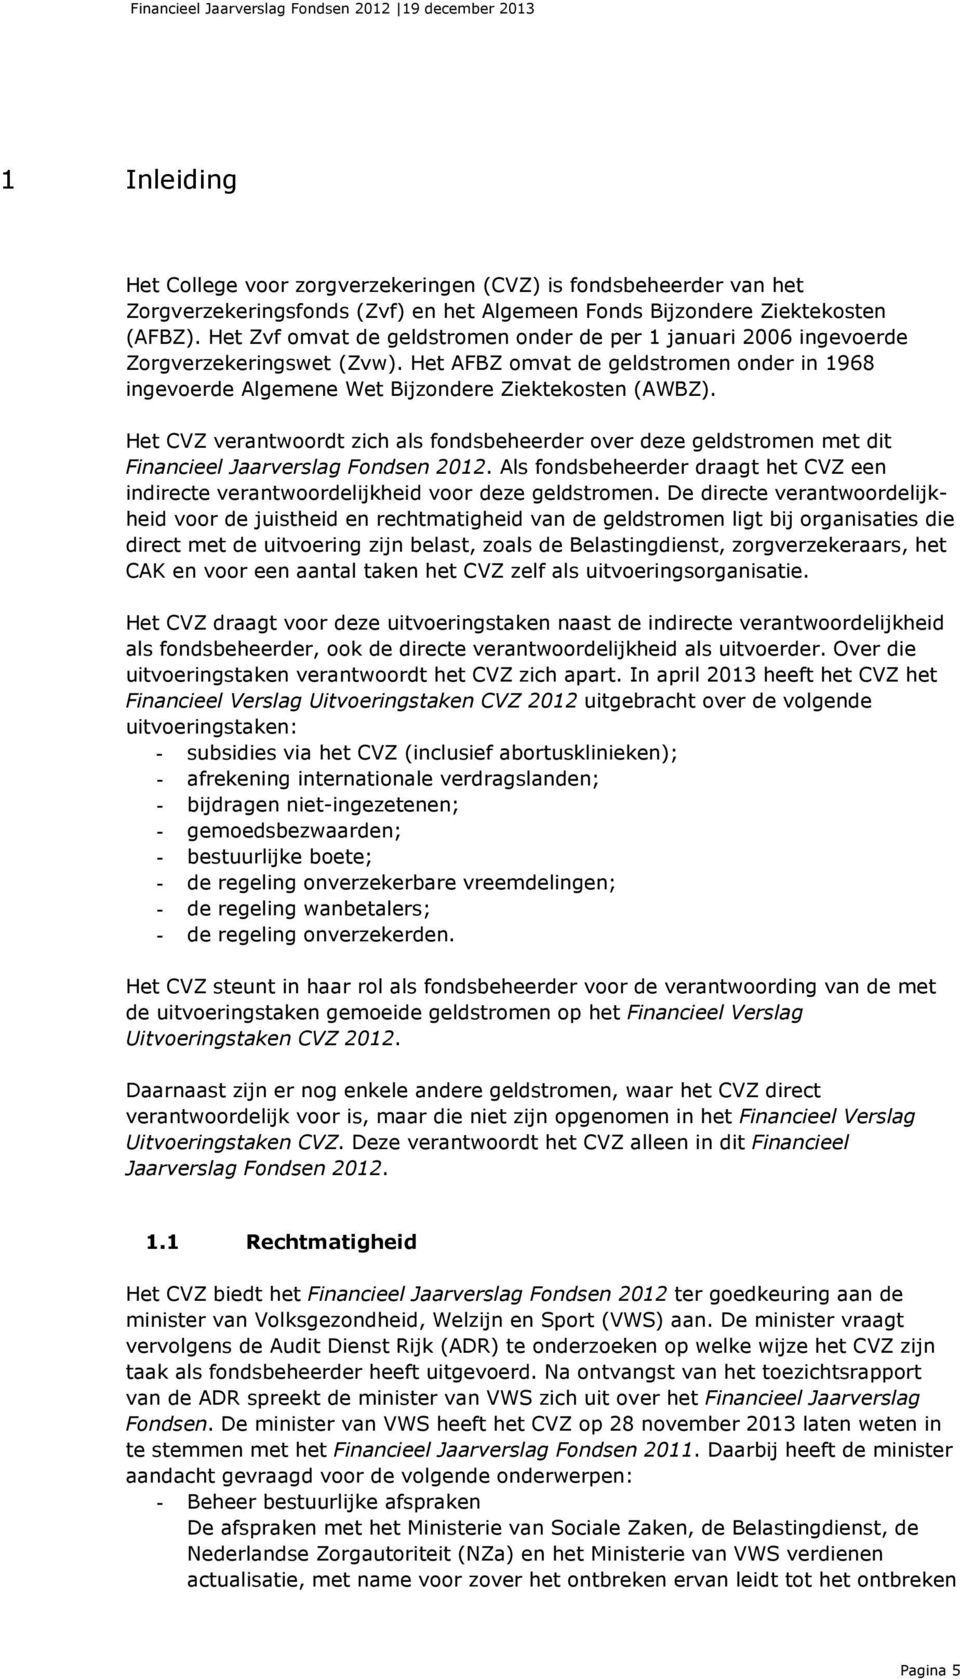 Het CVZ verantwoordt zich als fondsbeheerder over deze geldstromen met dit Financieel Jaarverslag Fondsen 2012.